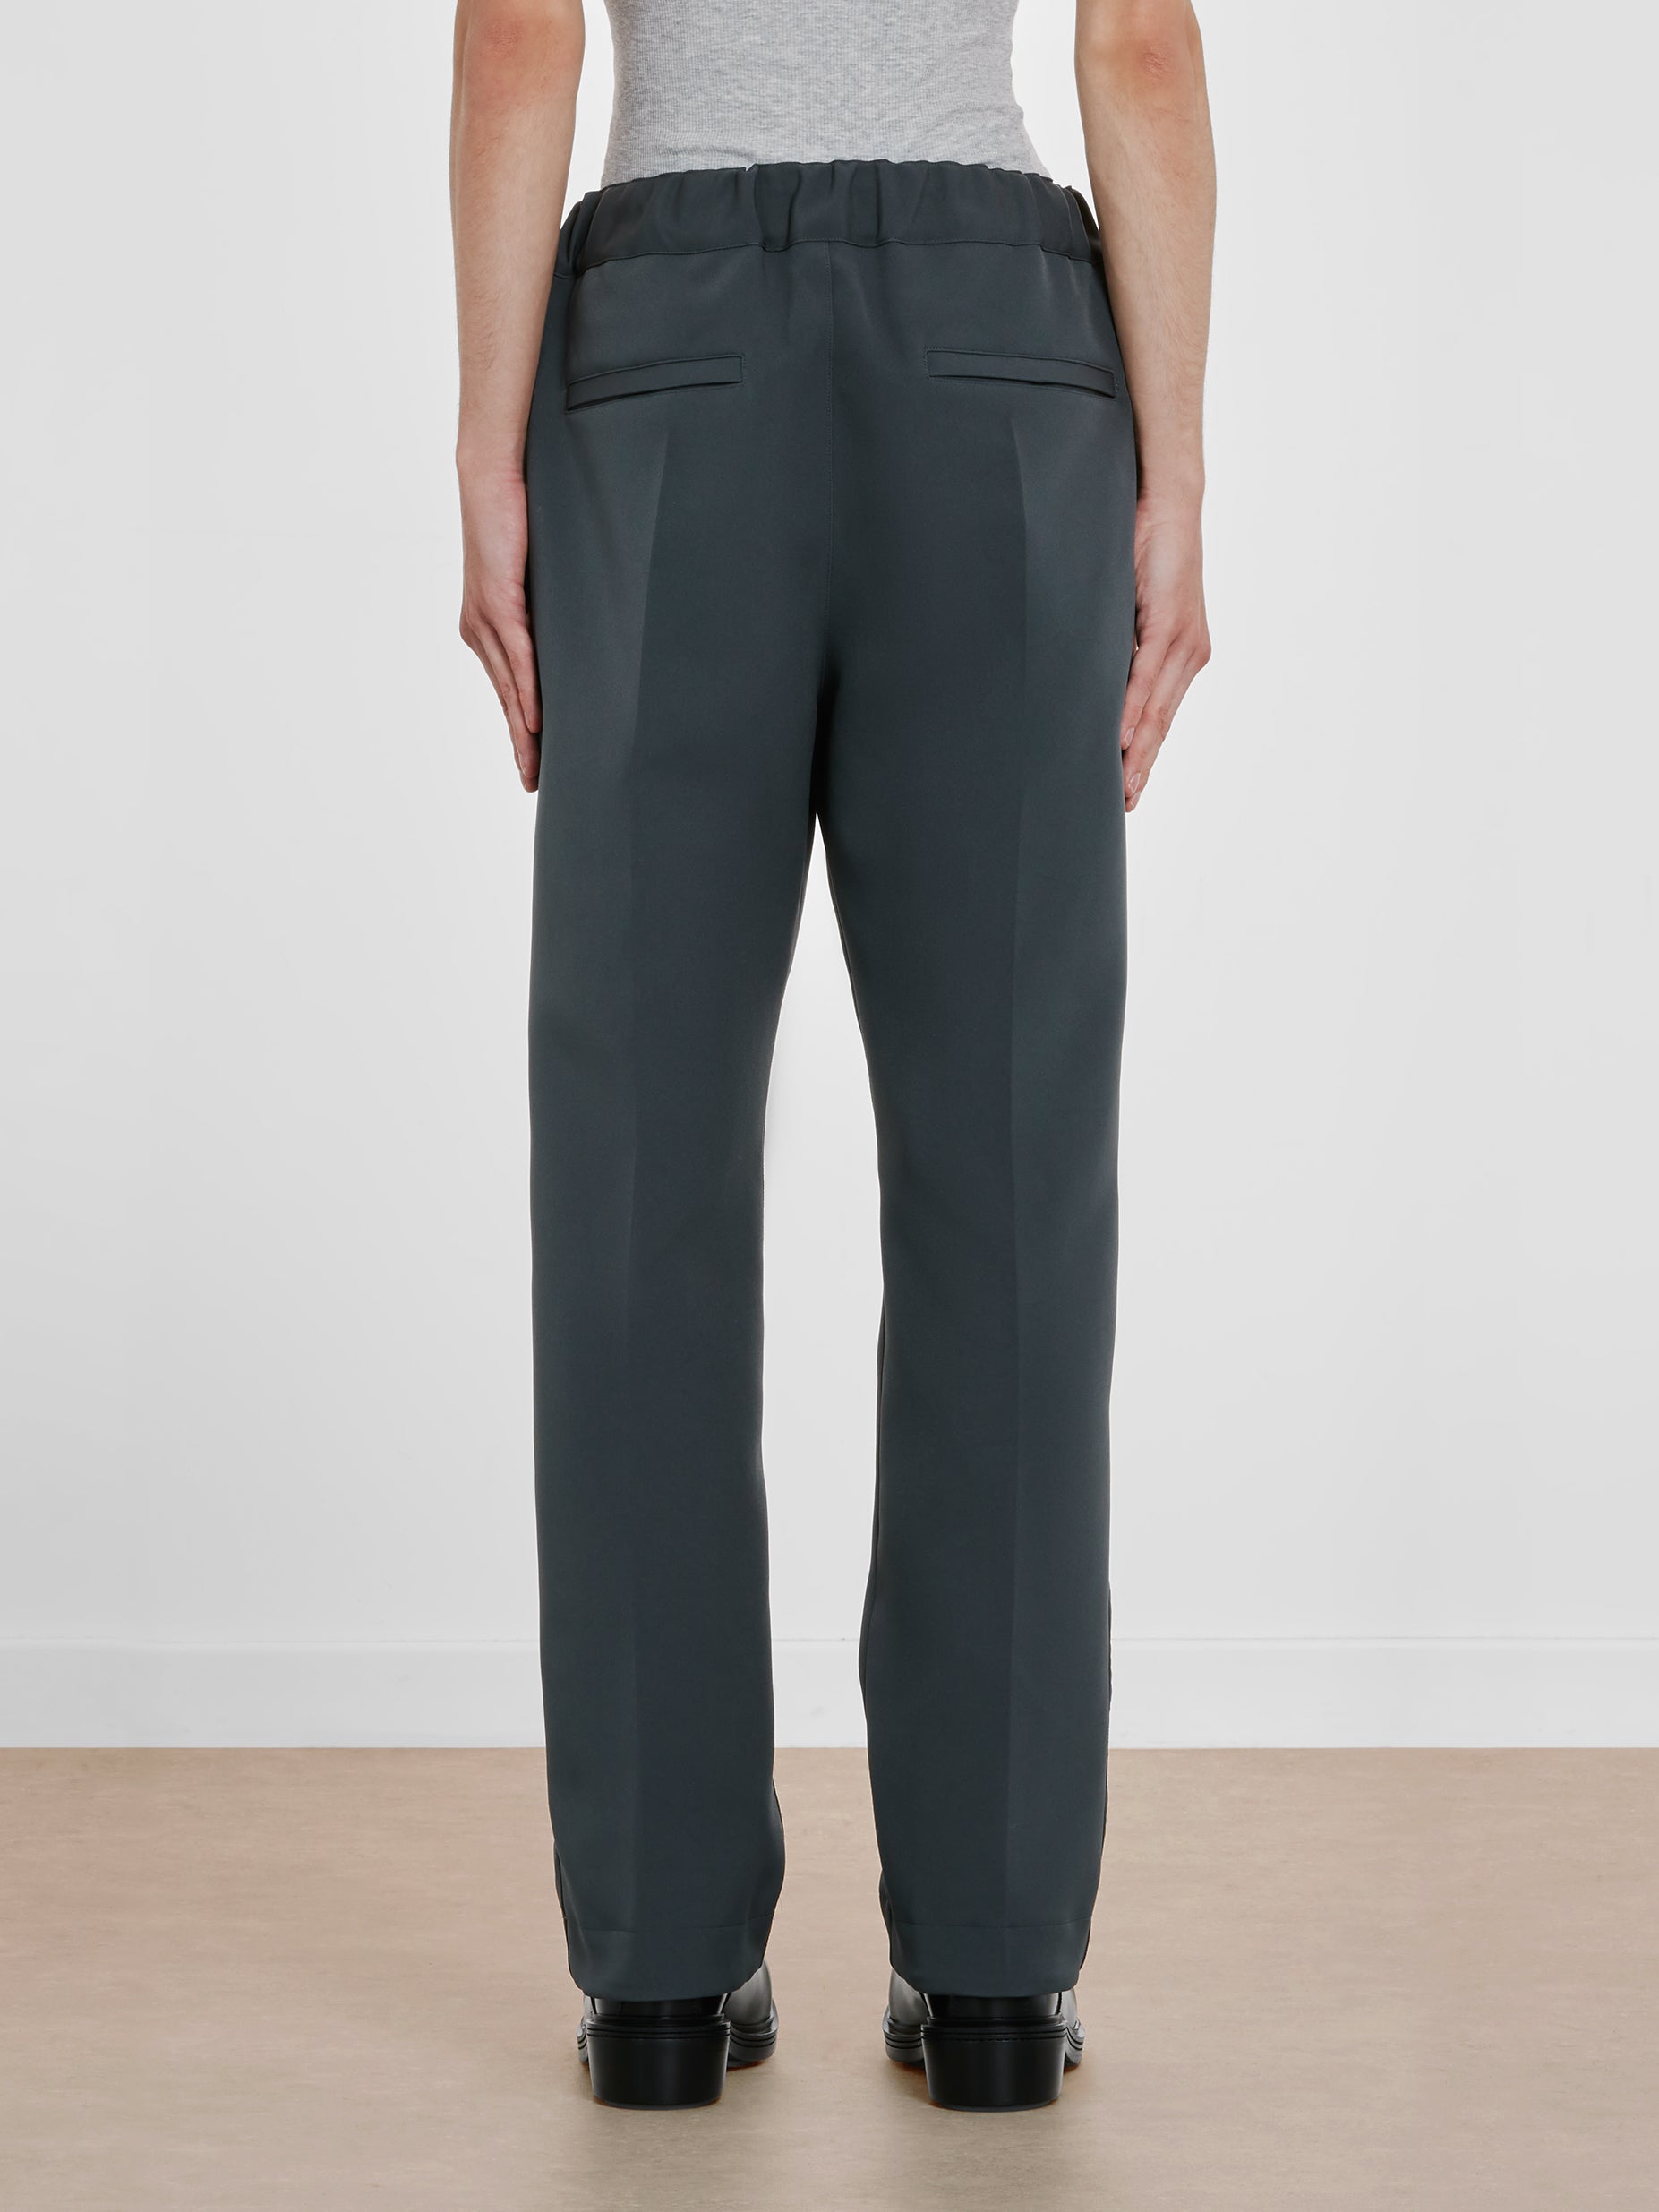 Sacai - Men's Technical Jersey Pants - (Gray)